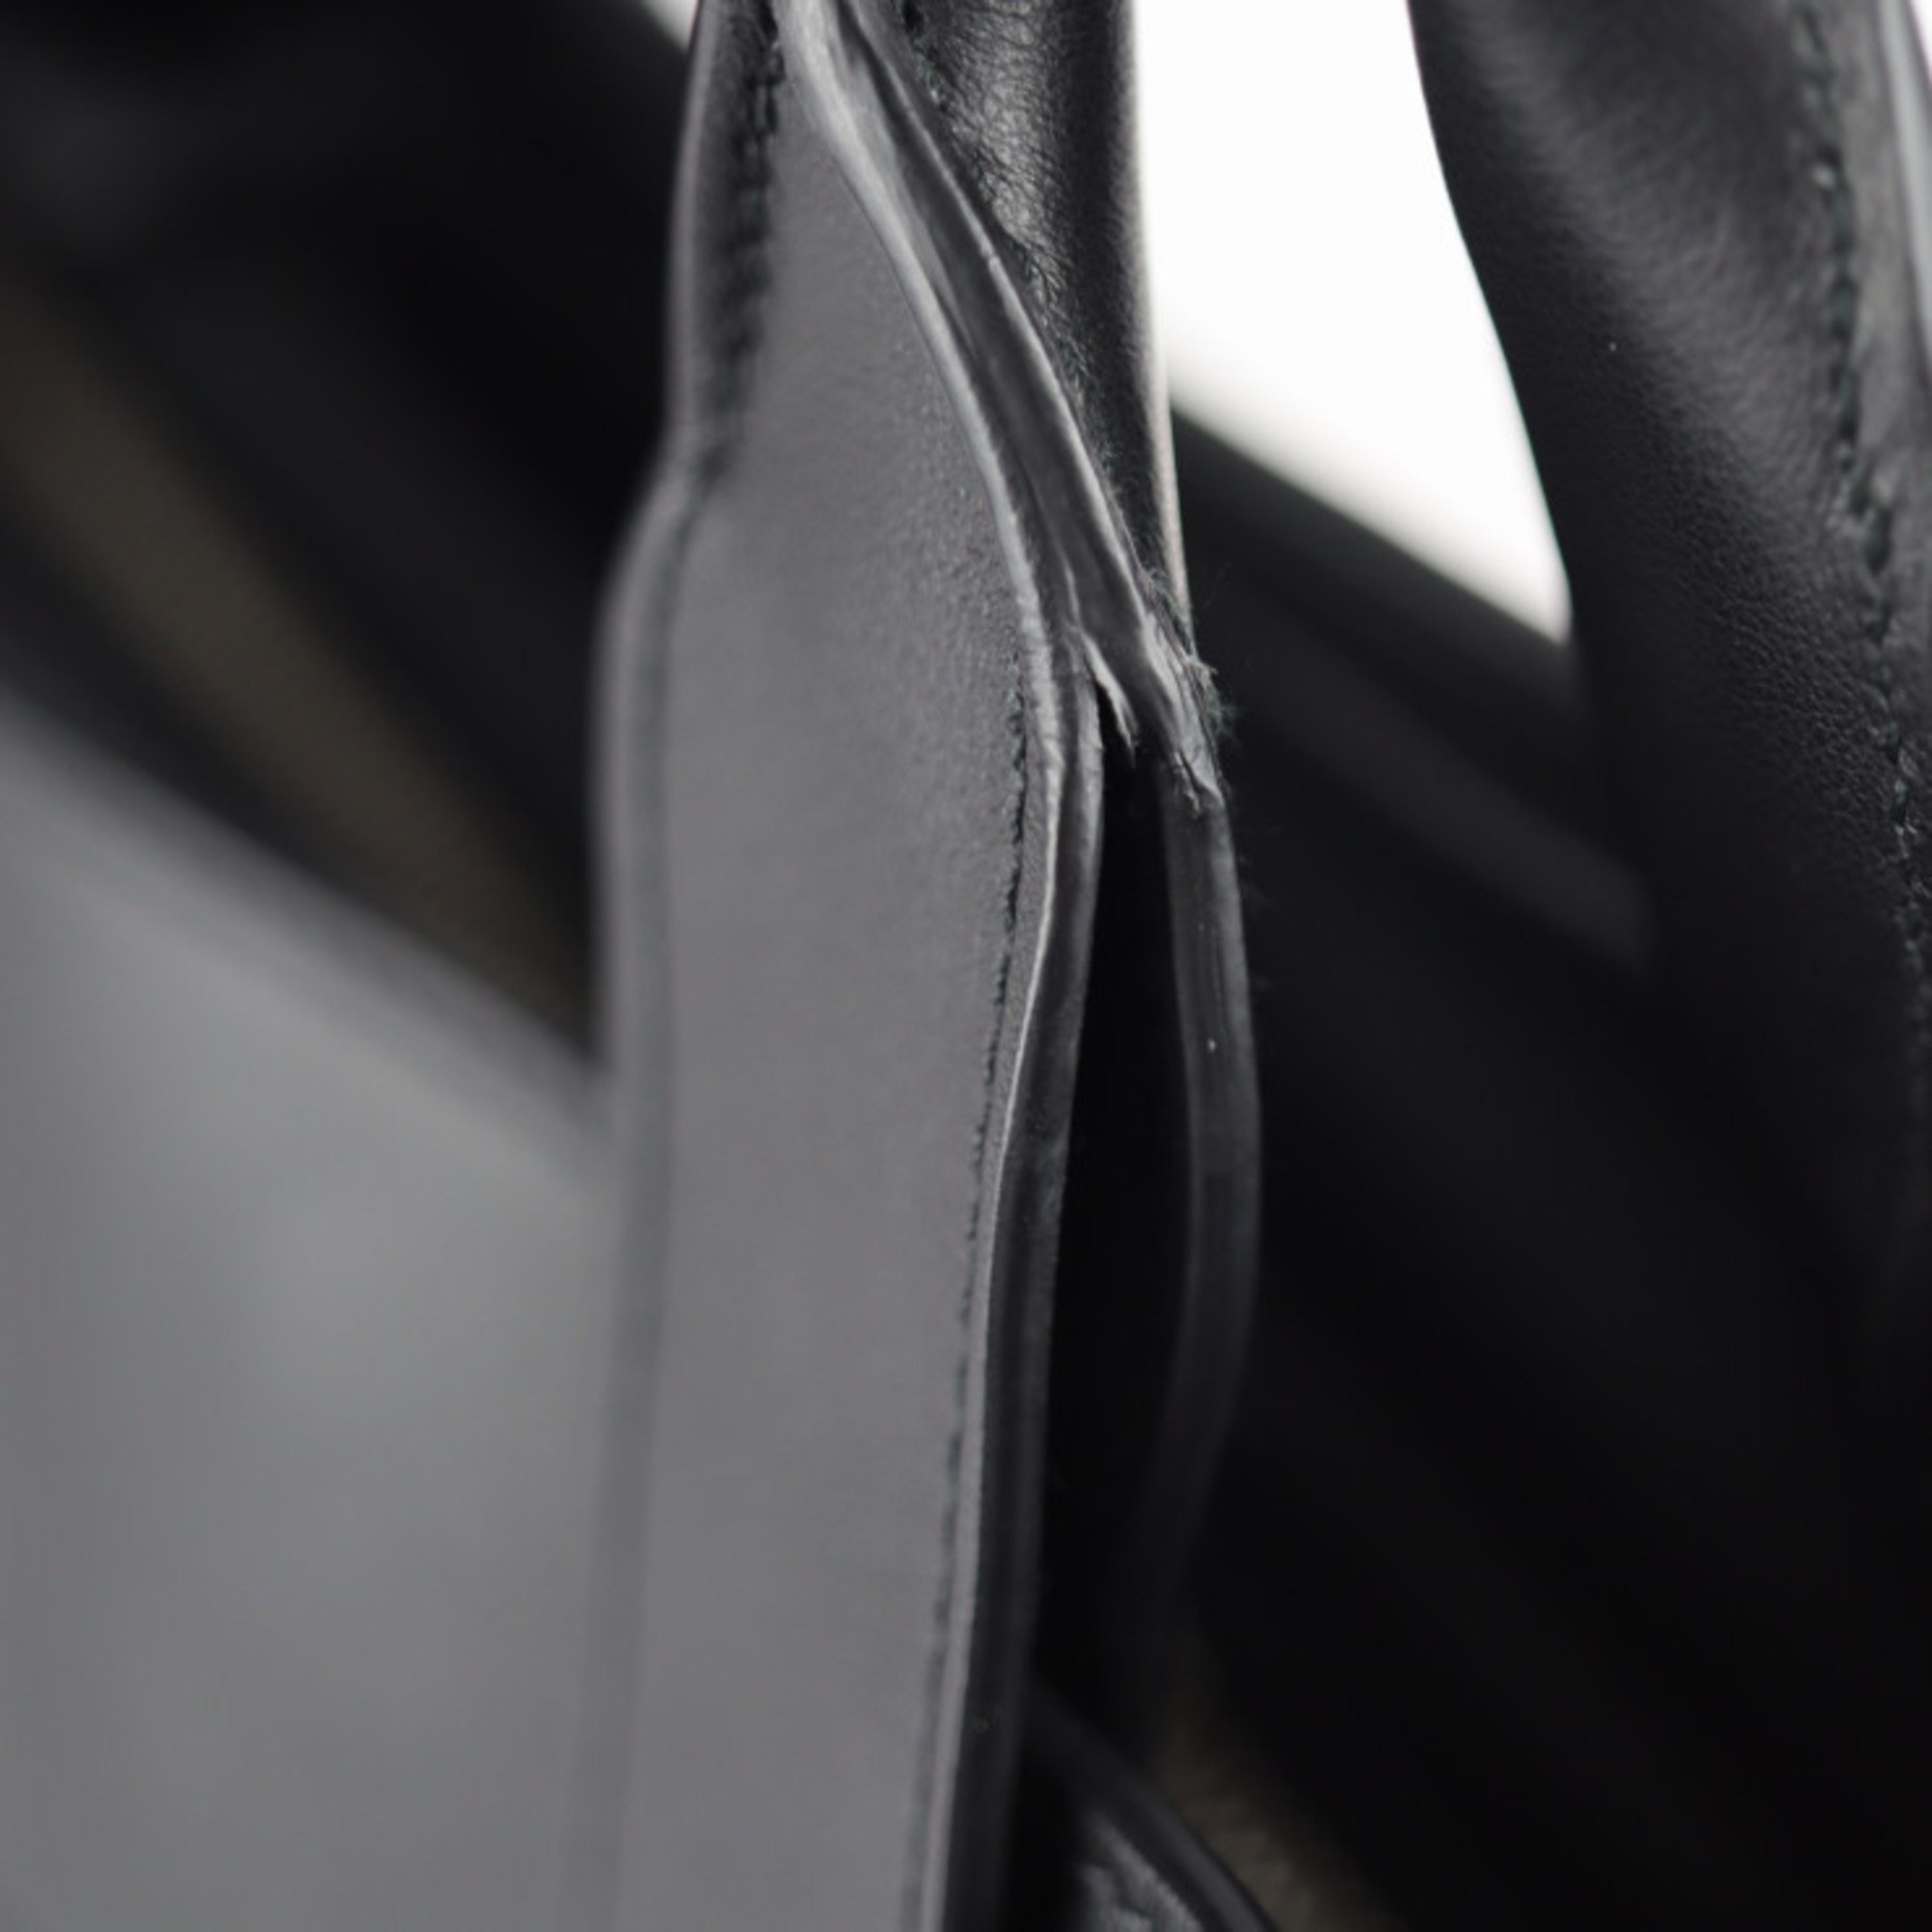 PRADA Prada Ouverture Tote Bag 1BG236 Leather Black White 2WAY Handbag Shoulder Shopping